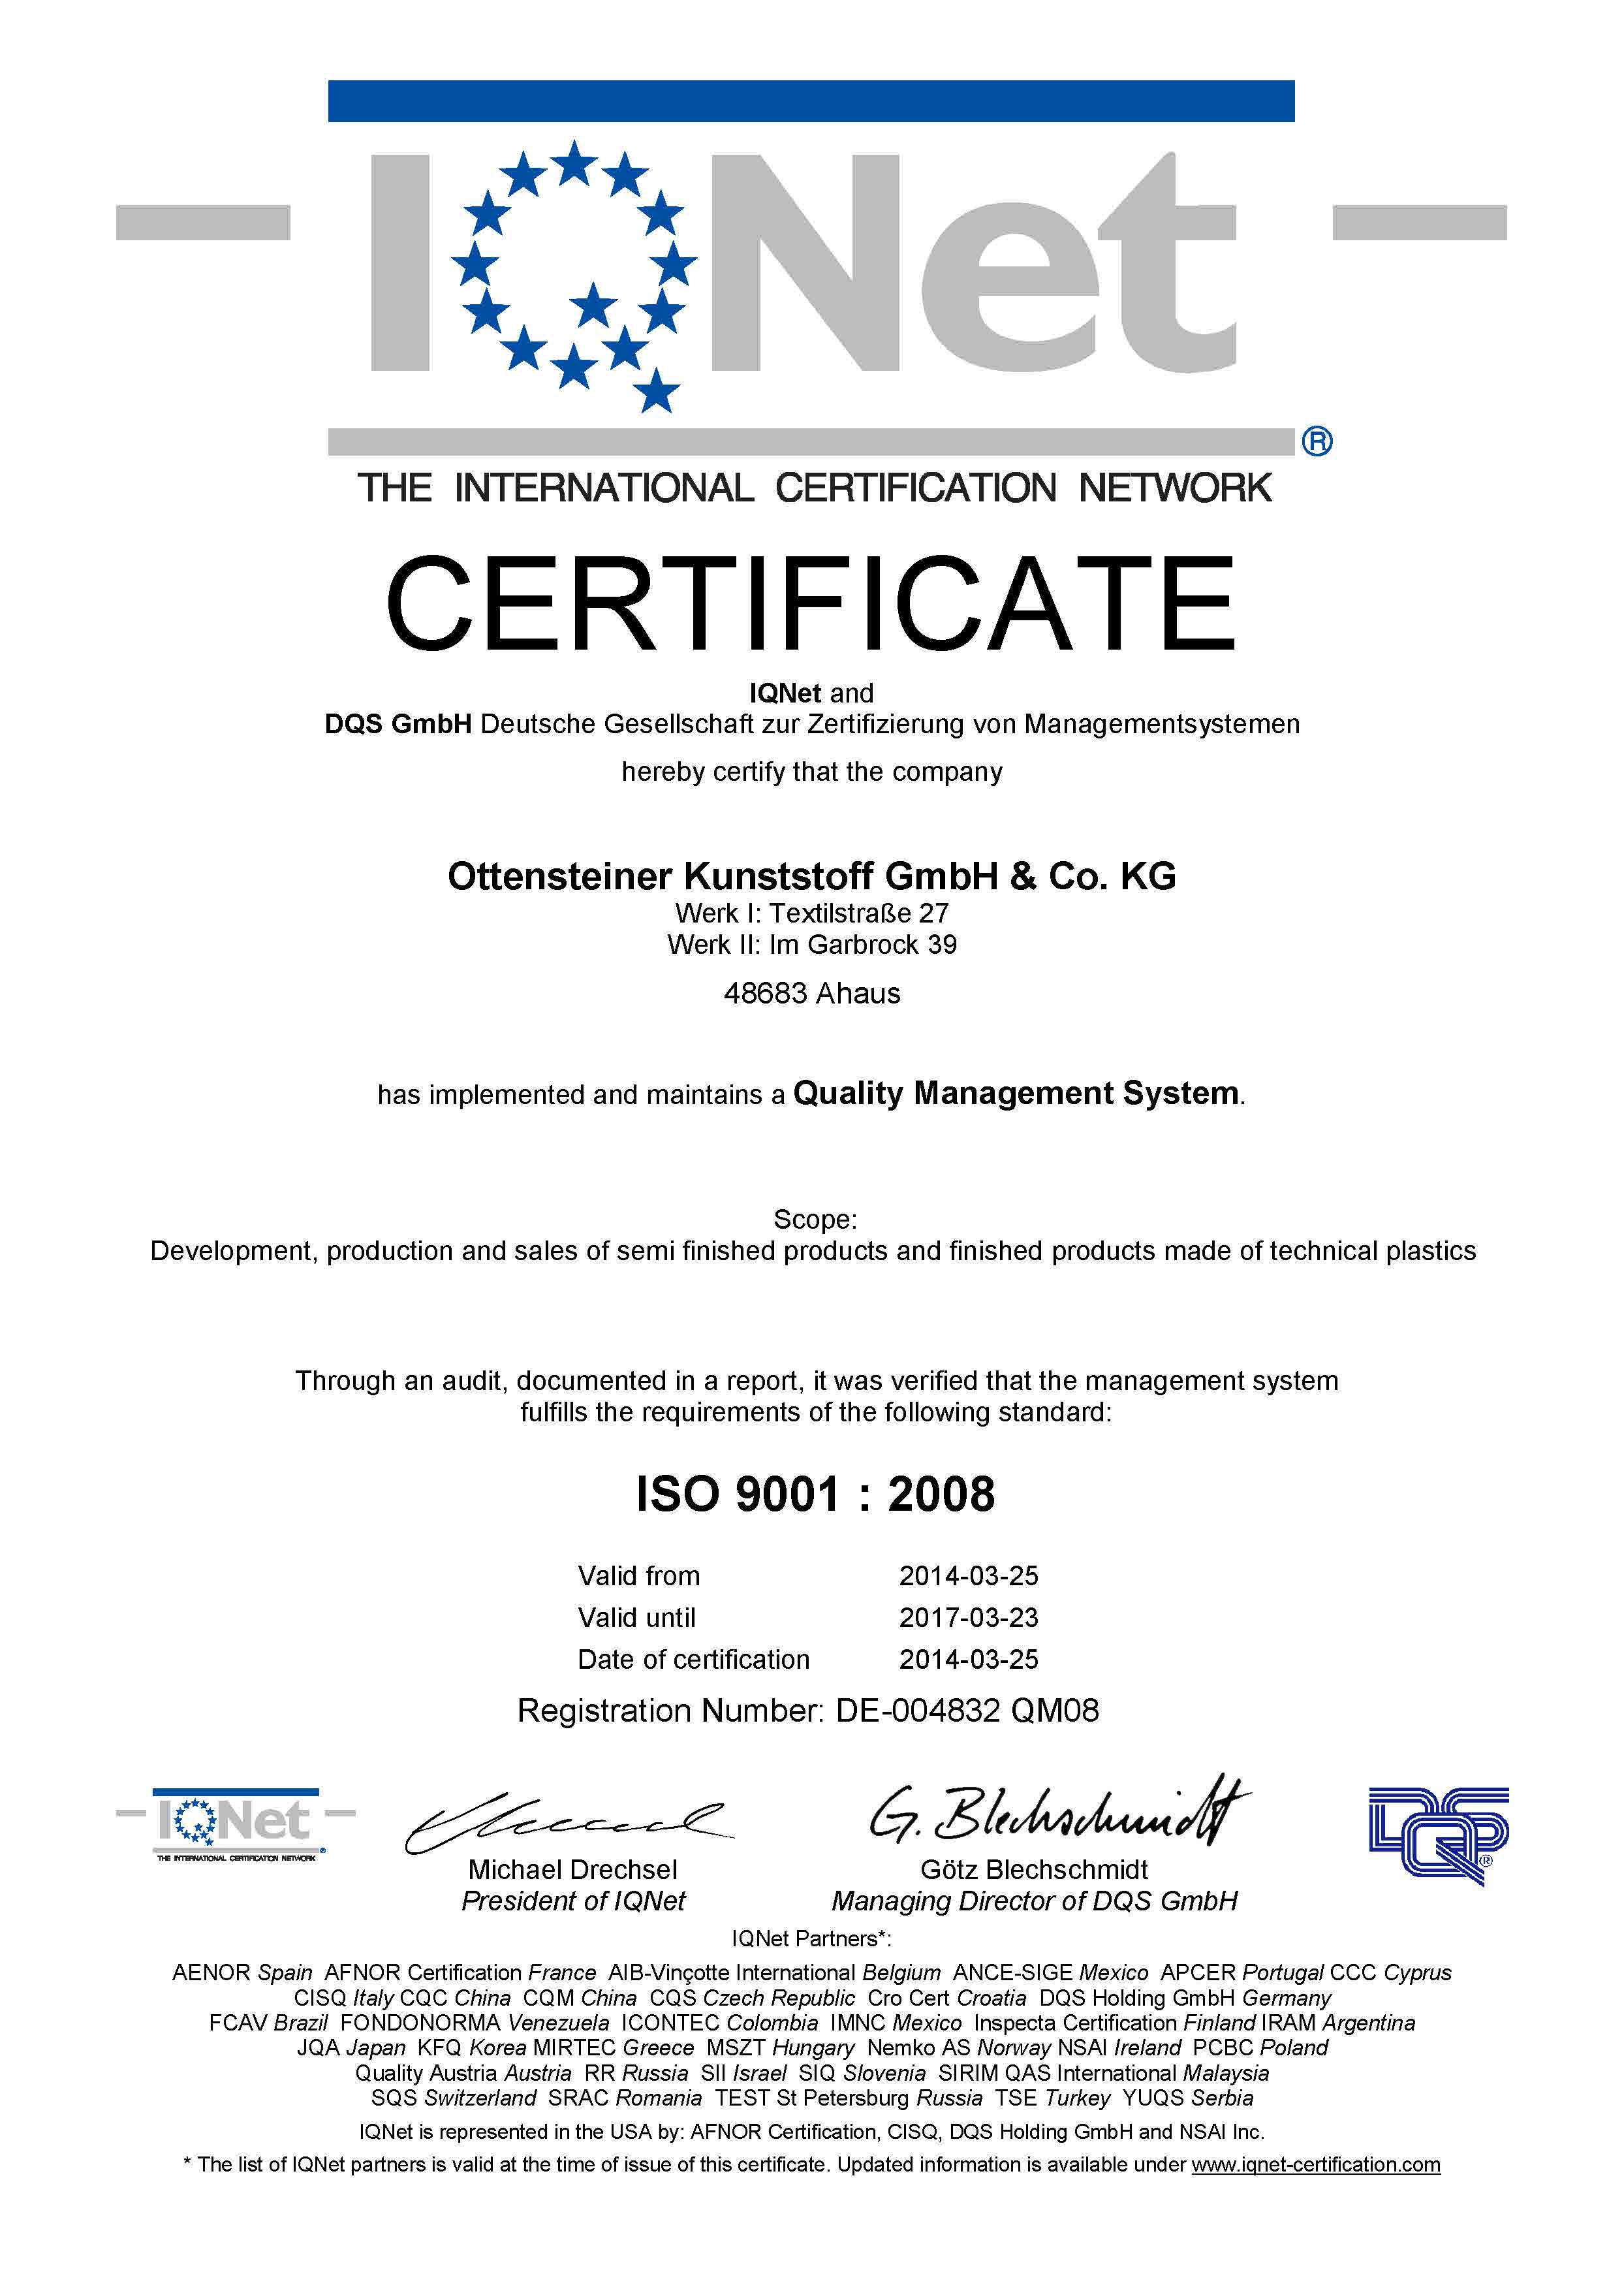 004832 - Ottensteiner Kunststoff GmbH & Co. KG - certificate - Englisch IQNet - 2014-03-25 - QM08